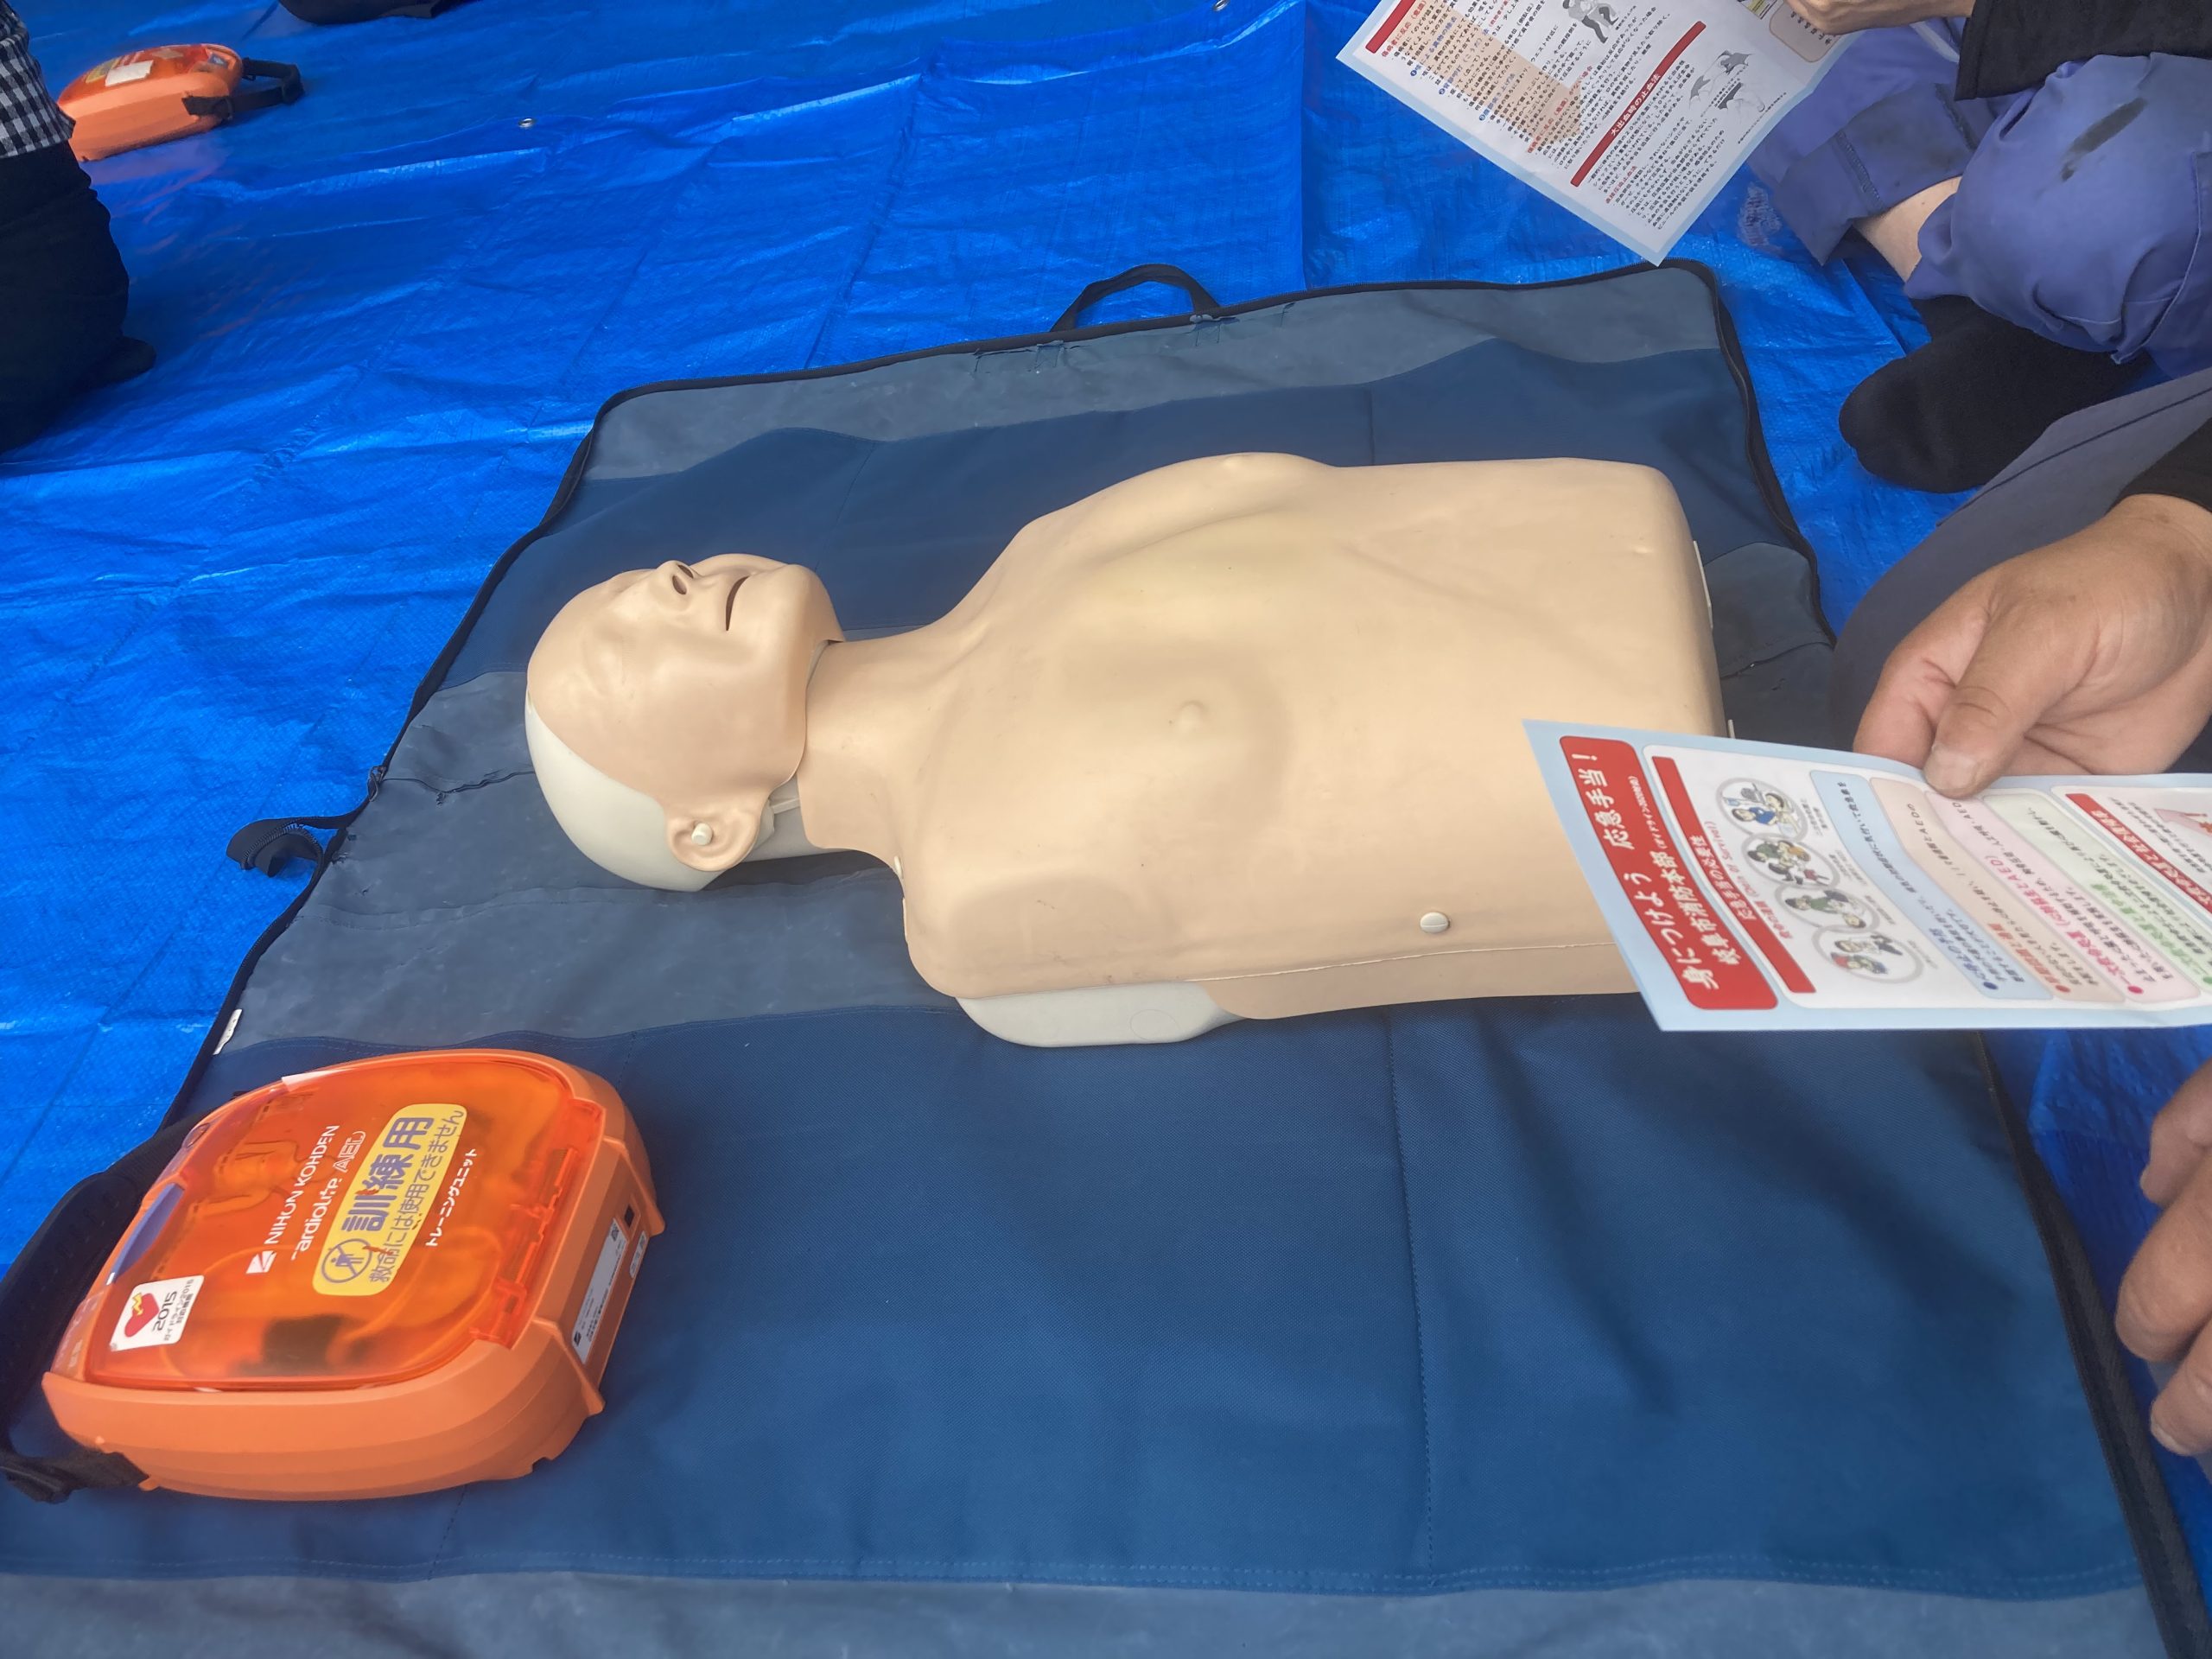 講習用のダミー人形と模擬AED